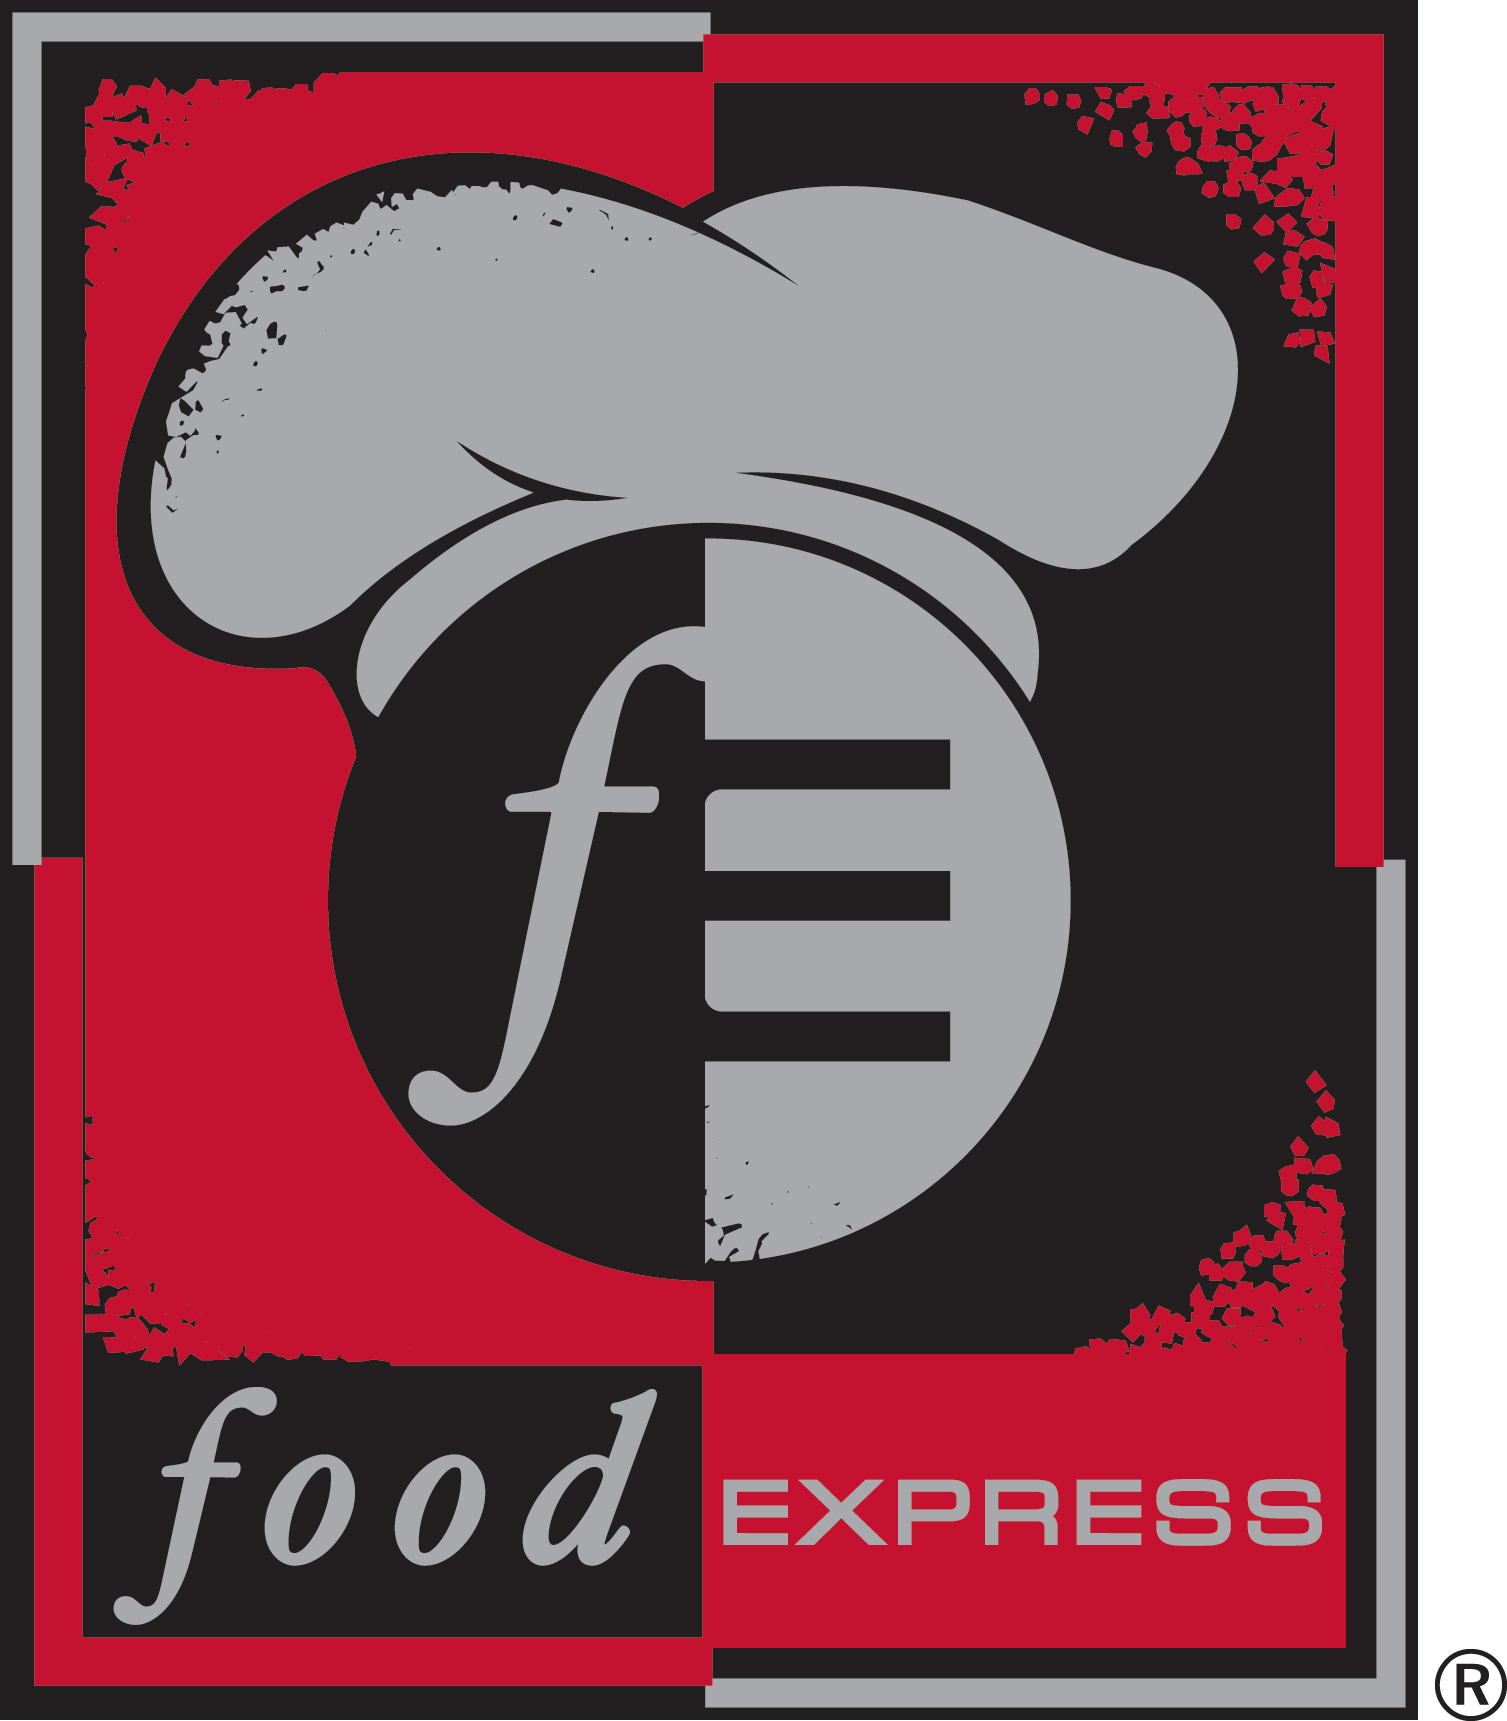 Food Express